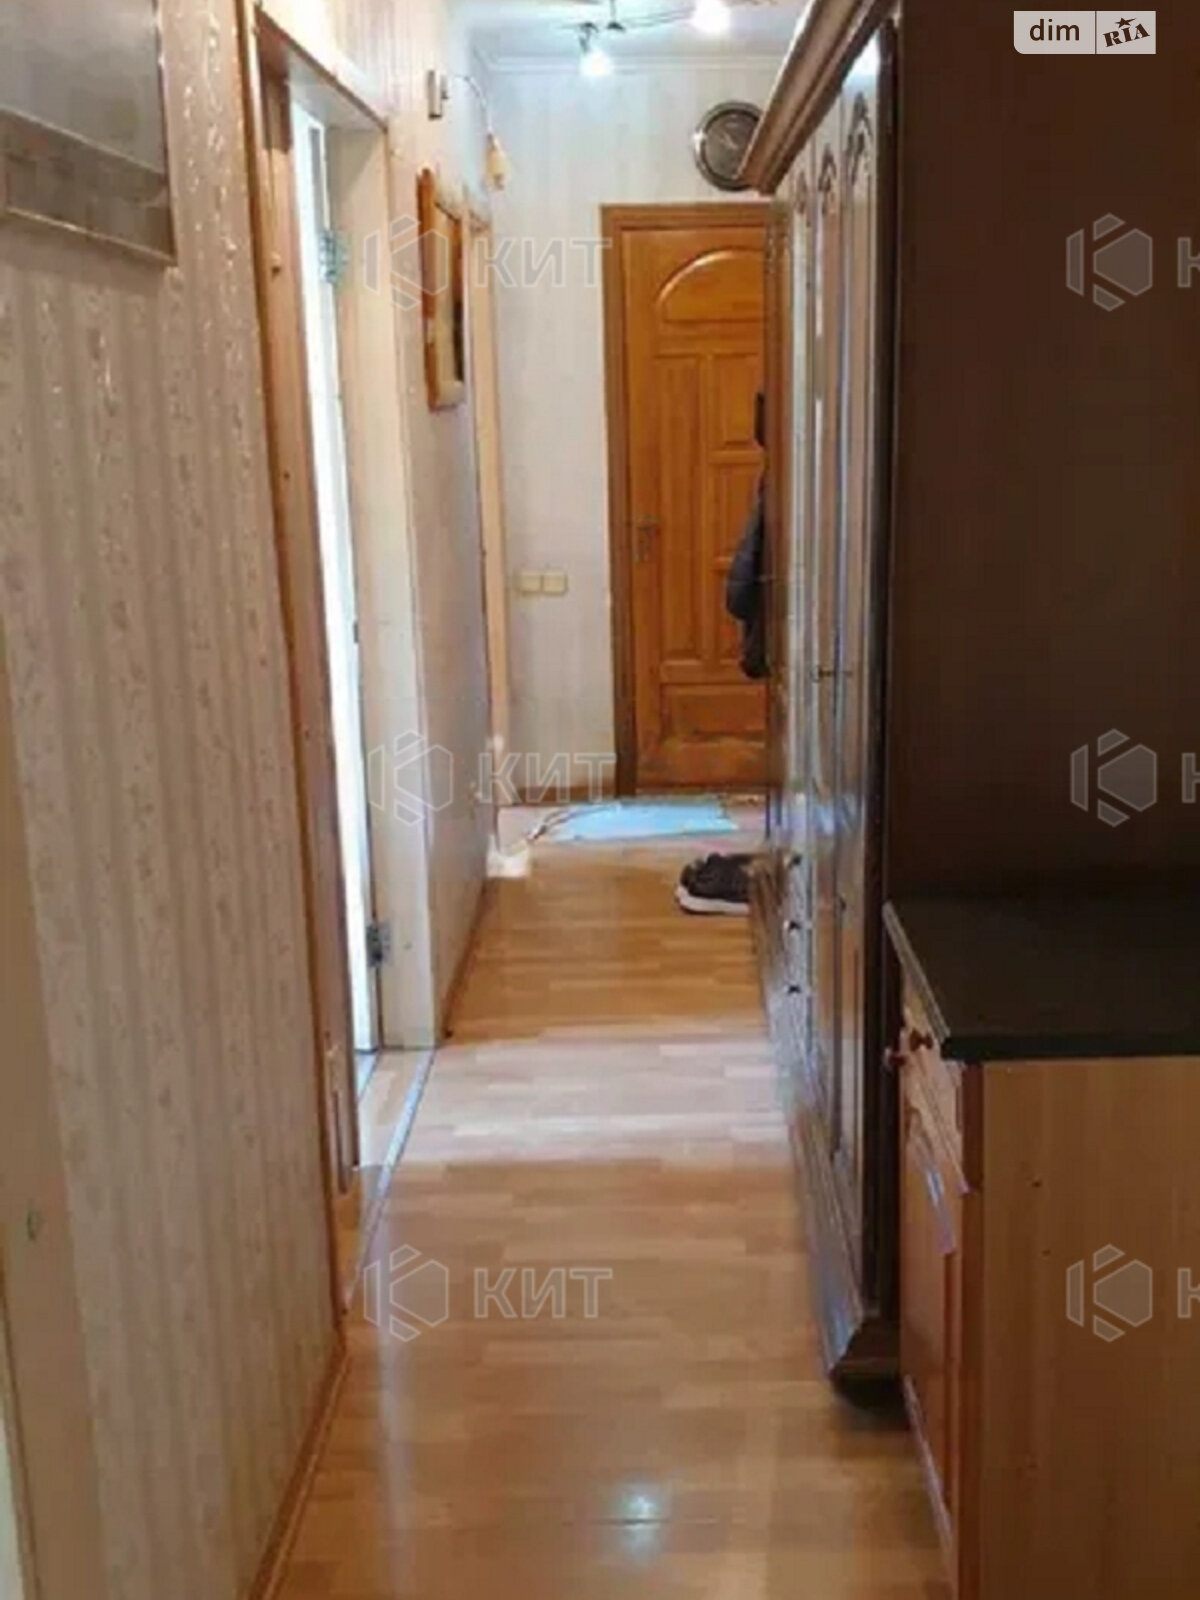 Продажа трехкомнатной квартиры в Харькове, на ул. Дмитриевская 5, район Центр фото 1